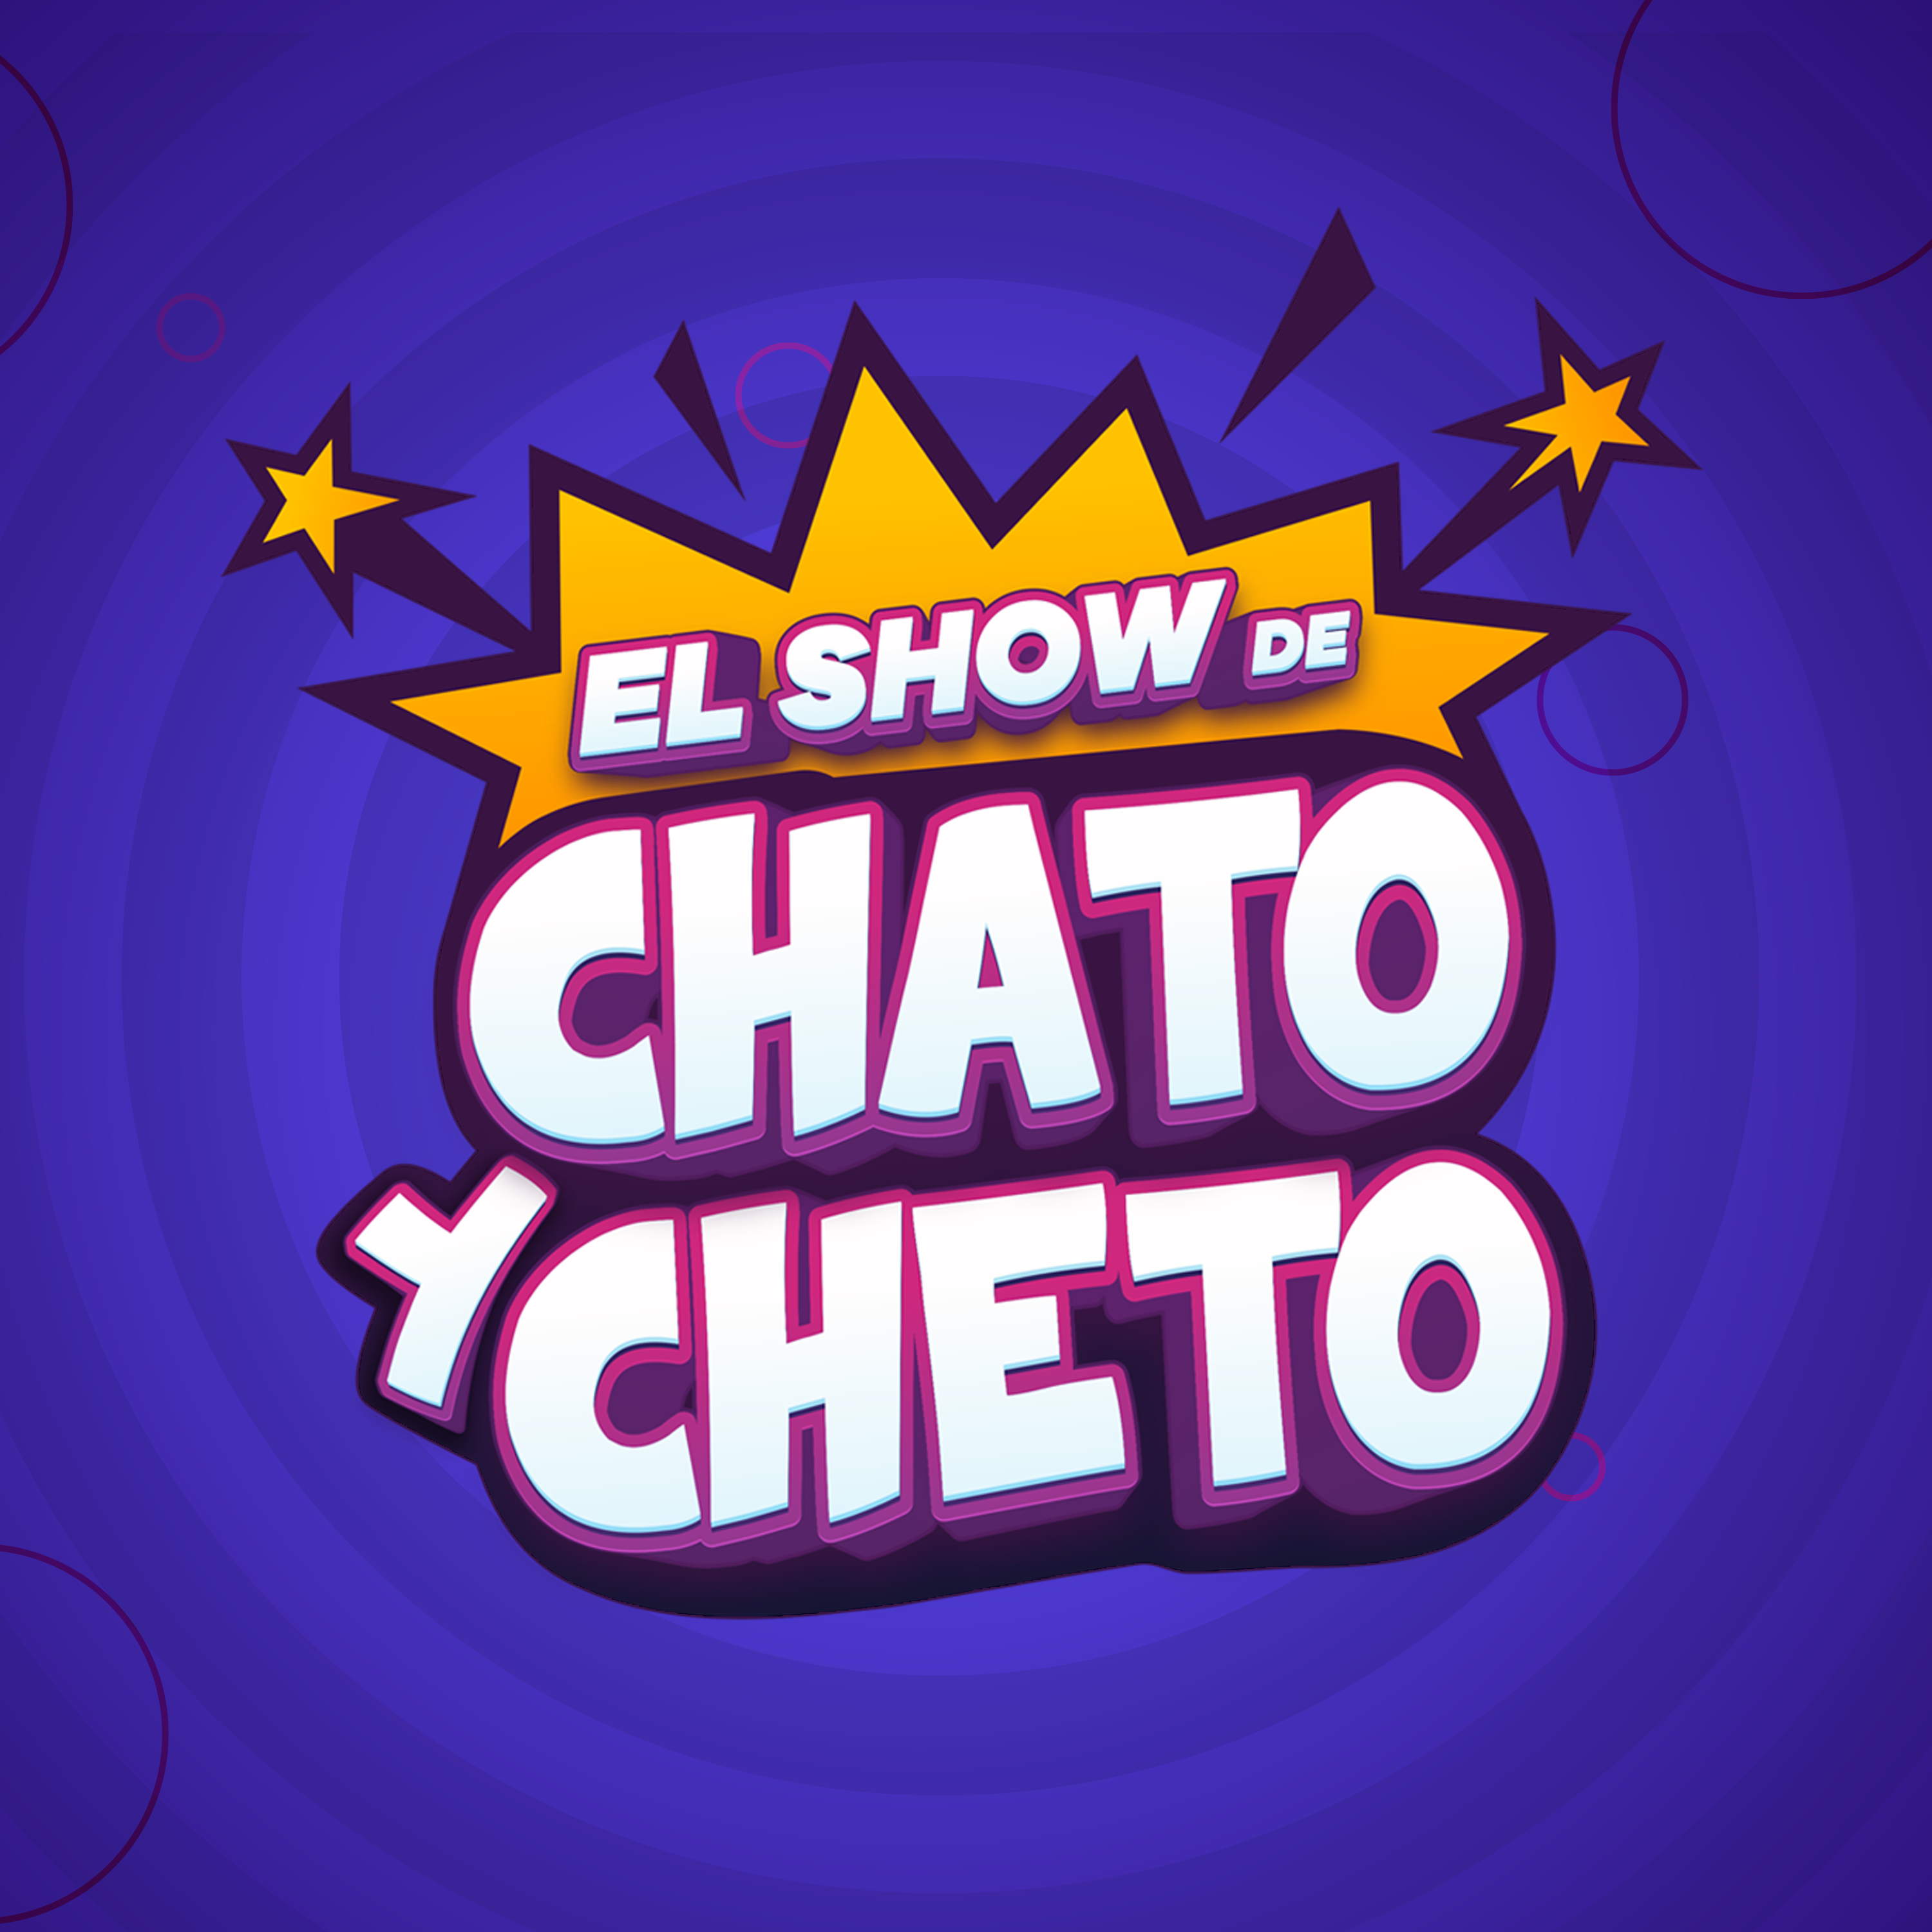 Imagen de El show de Chato y Cheto